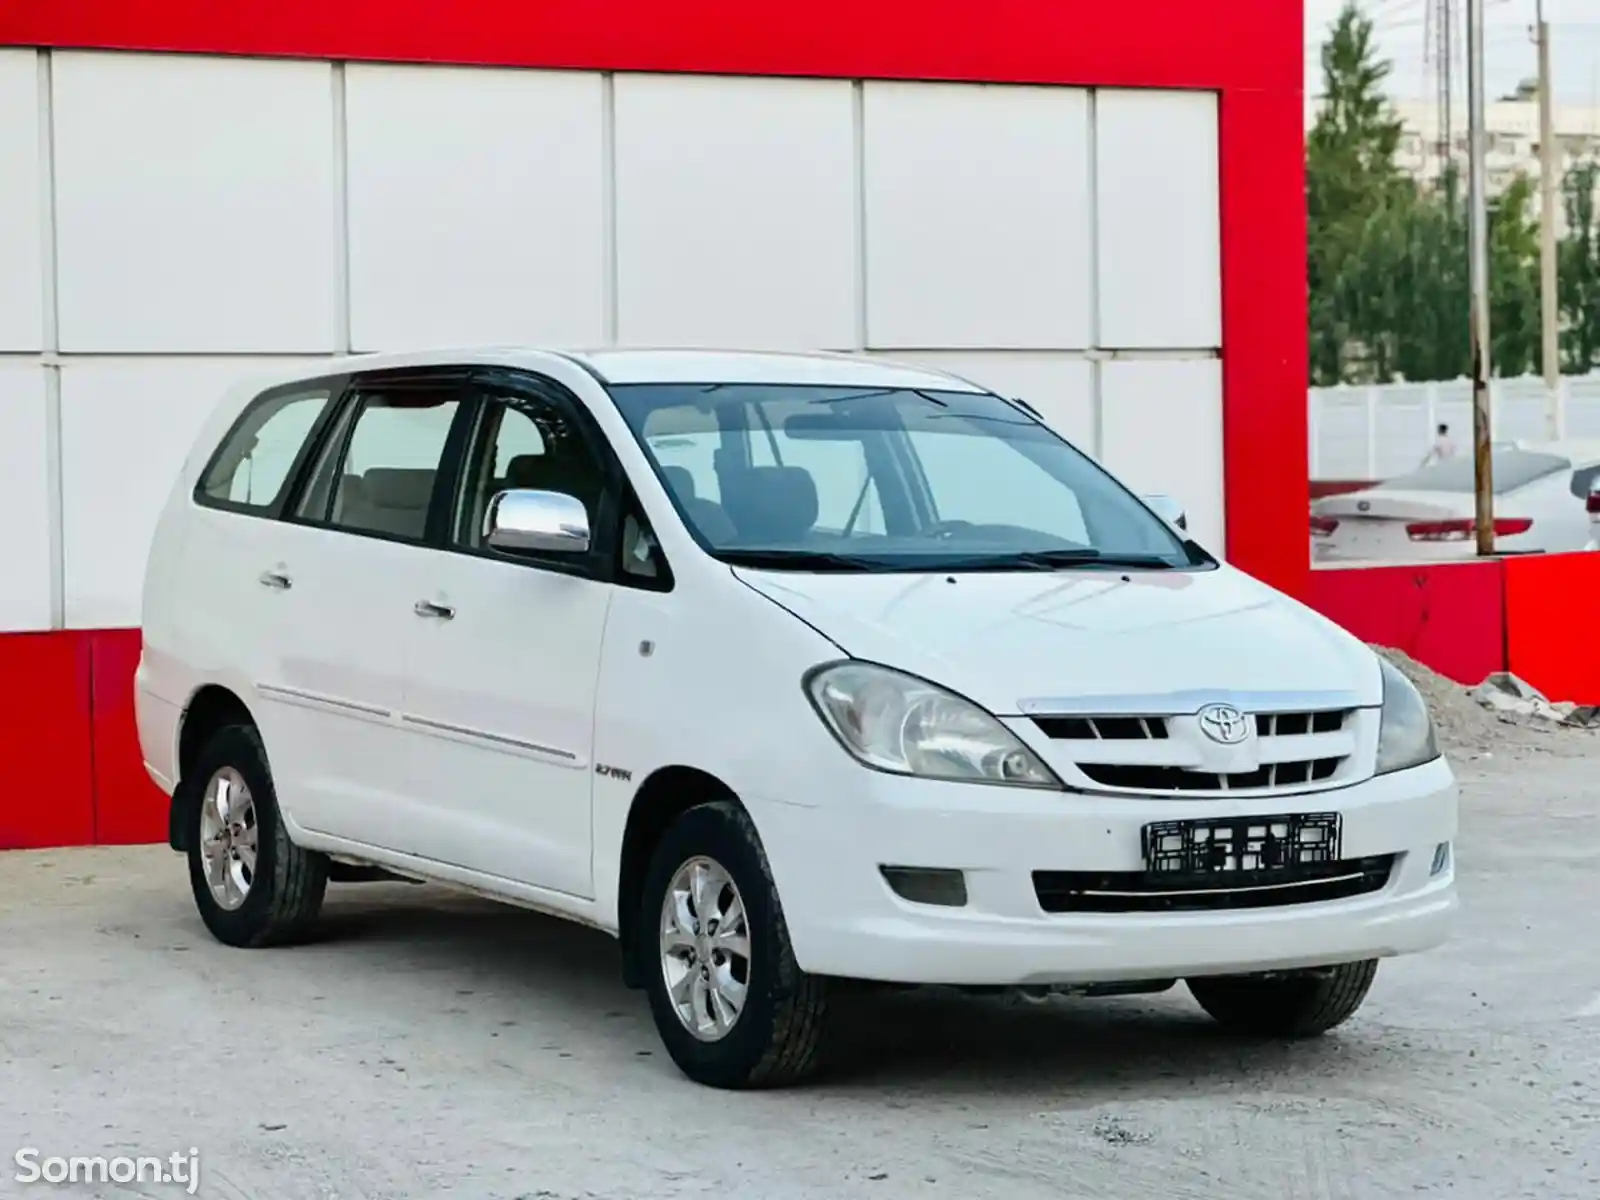 Toyota Innova, 2006-2